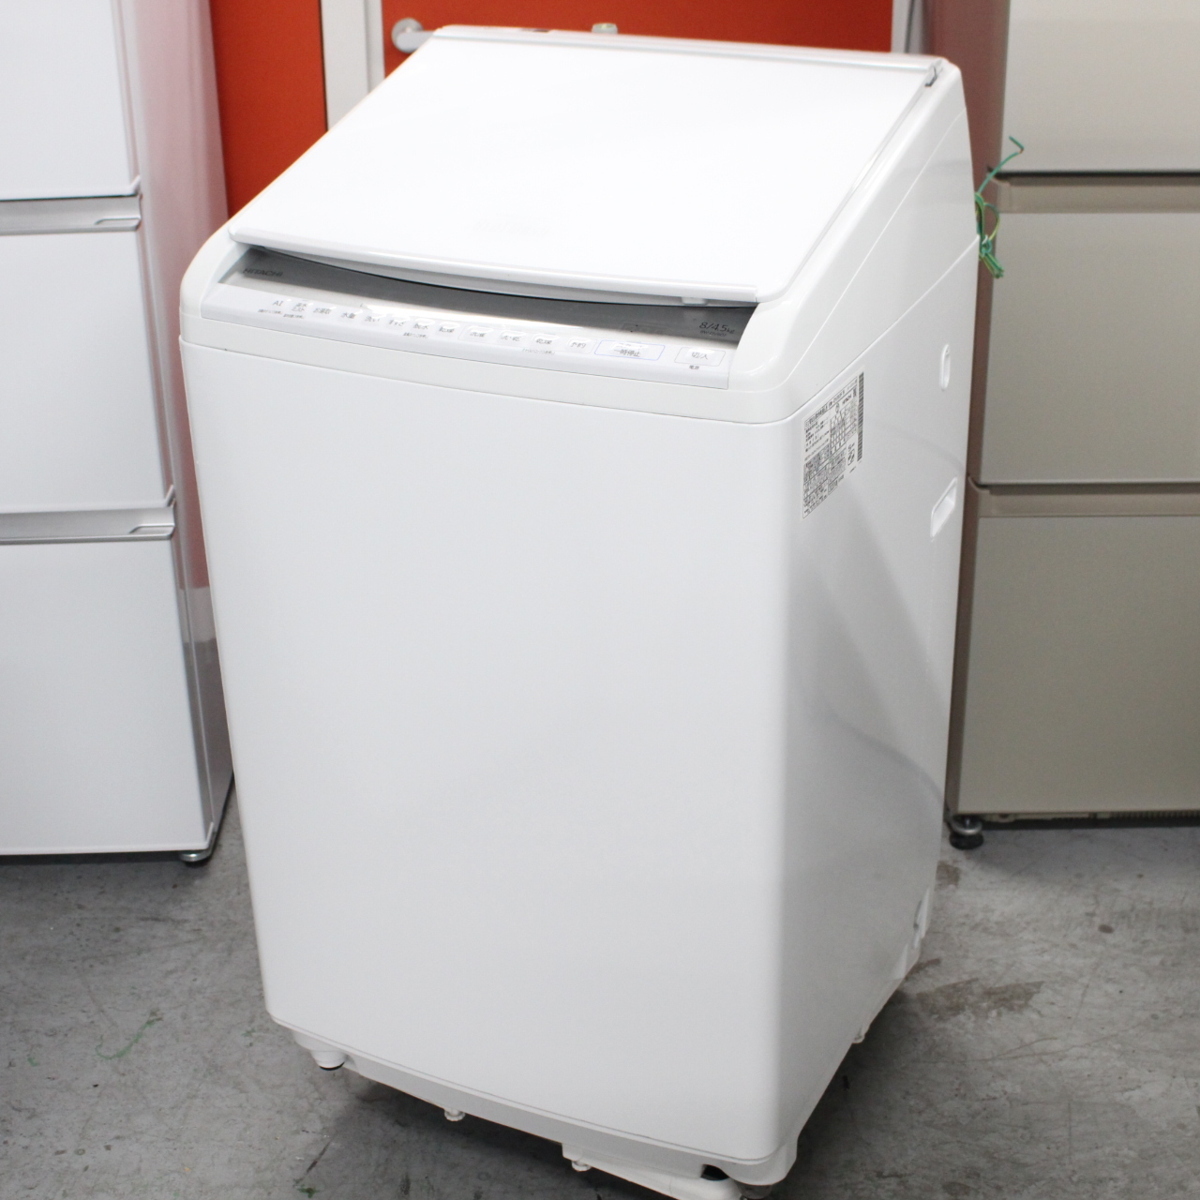 東京都豊島区にて 日立 全自動洗濯機 BEET WASH BW-DV80F 2020年製 を出張買取させて頂きました。